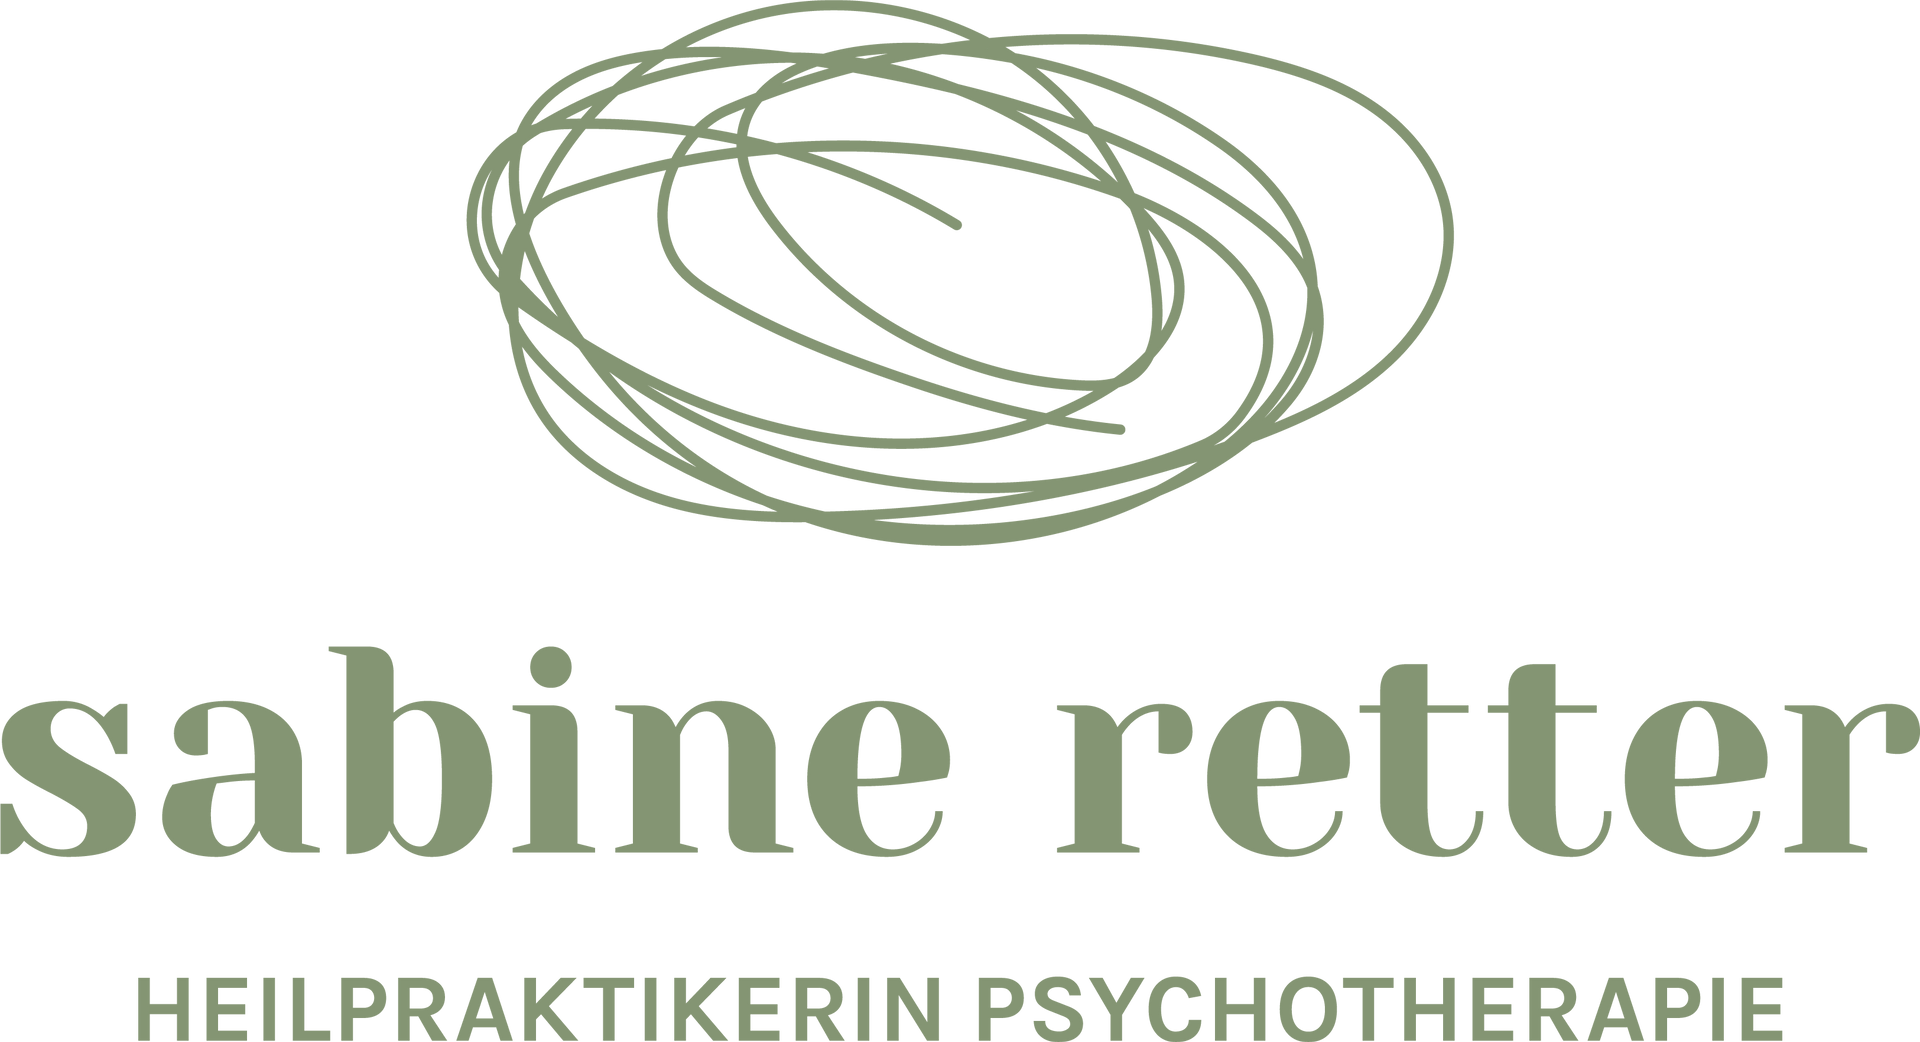 Sabine Retter Heilpraktikerin Psychotherapie